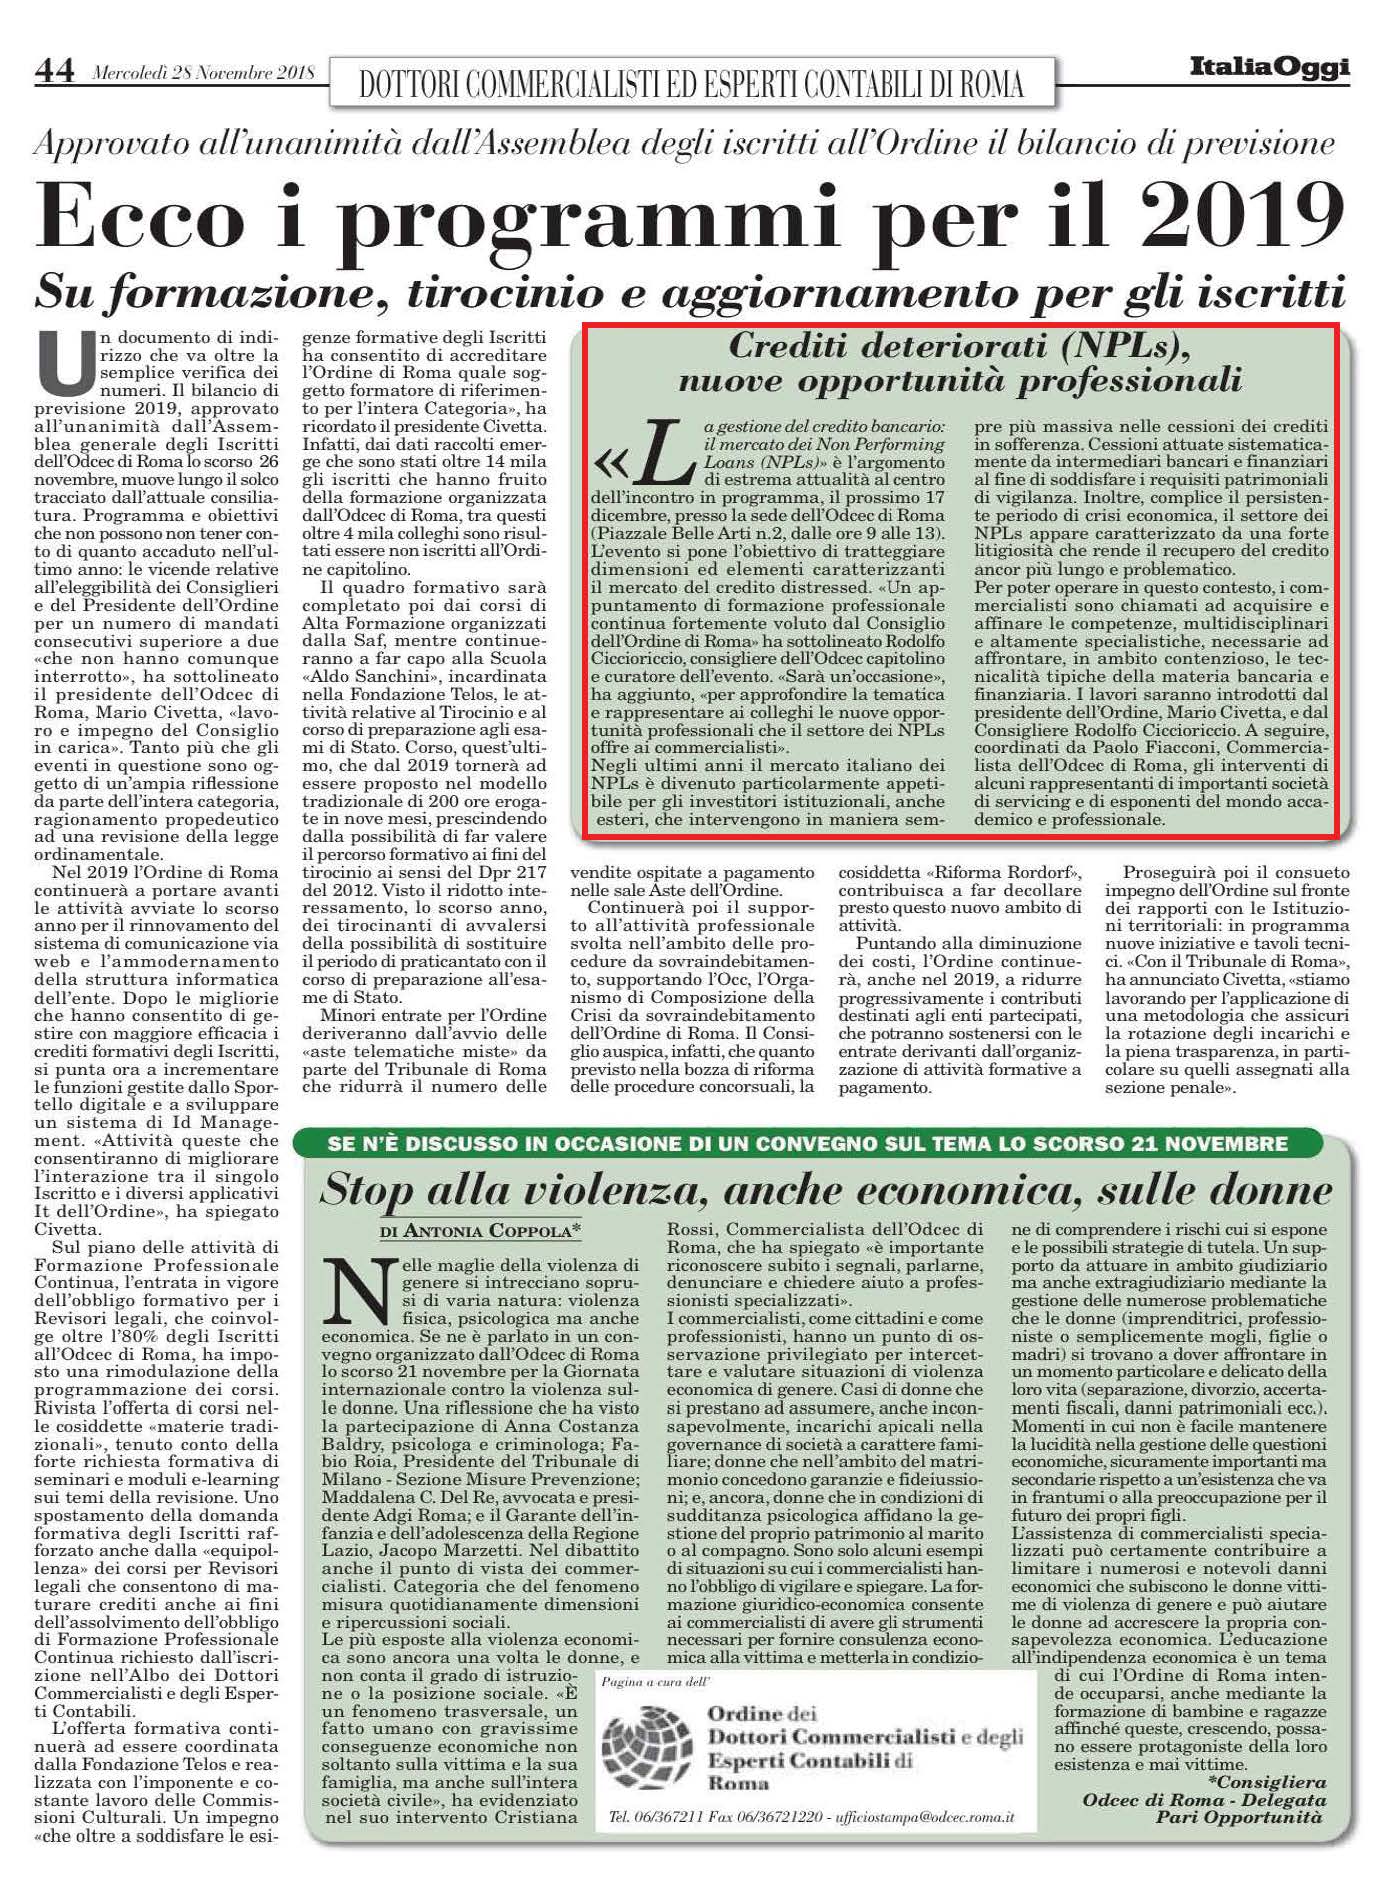 Italia Oggi - Articolo Corso 18.12.18